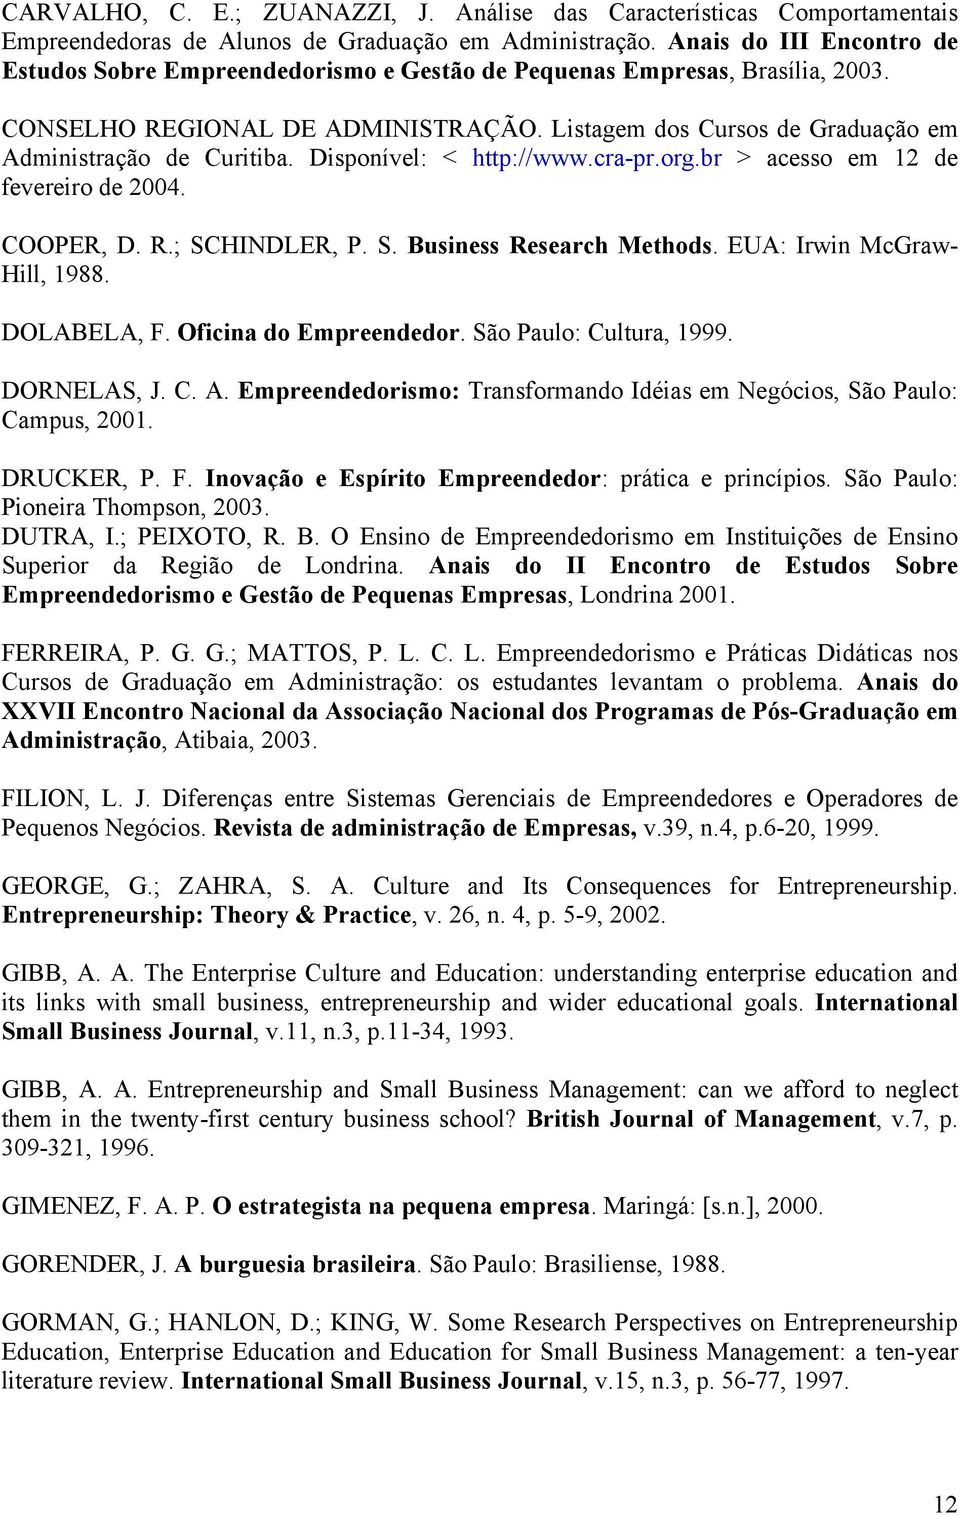 Listagem dos Cursos de Graduação em Administração de Curitiba. Disponível: < http://www.cra-pr.org.br > acesso em 12 de fevereiro de 2004. COOPER, D. R.; SCHINDLER, P. S. Business Research Methods.